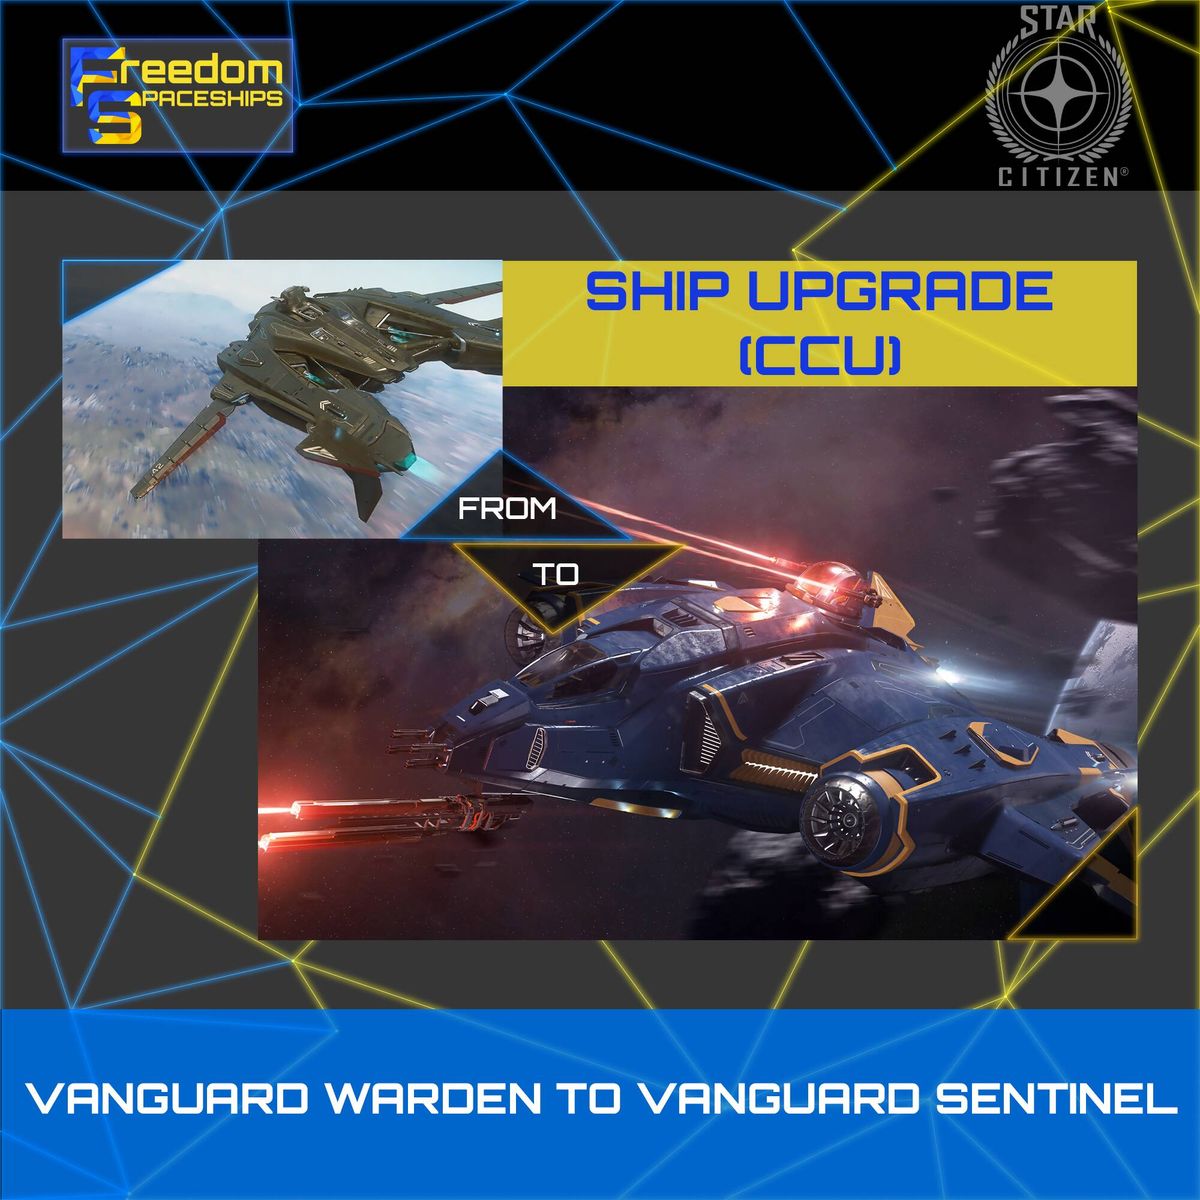 Upgrade - Vanguard Warden to Vanguard Sentinel